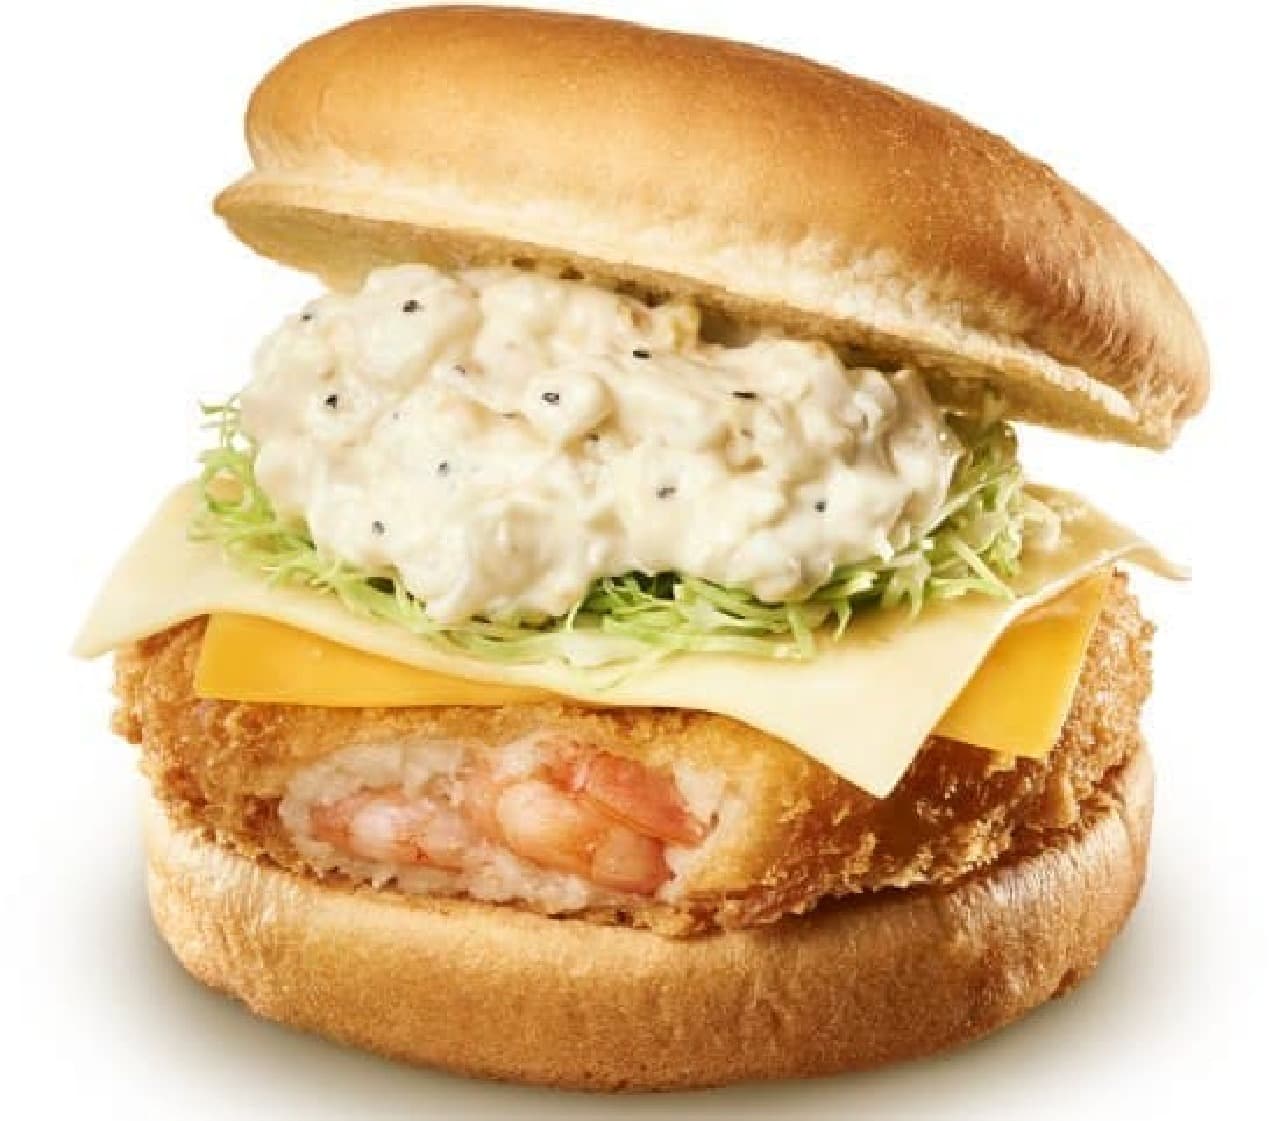 Lotteria "Mozzarella & Cheddar Shrimp Burger"